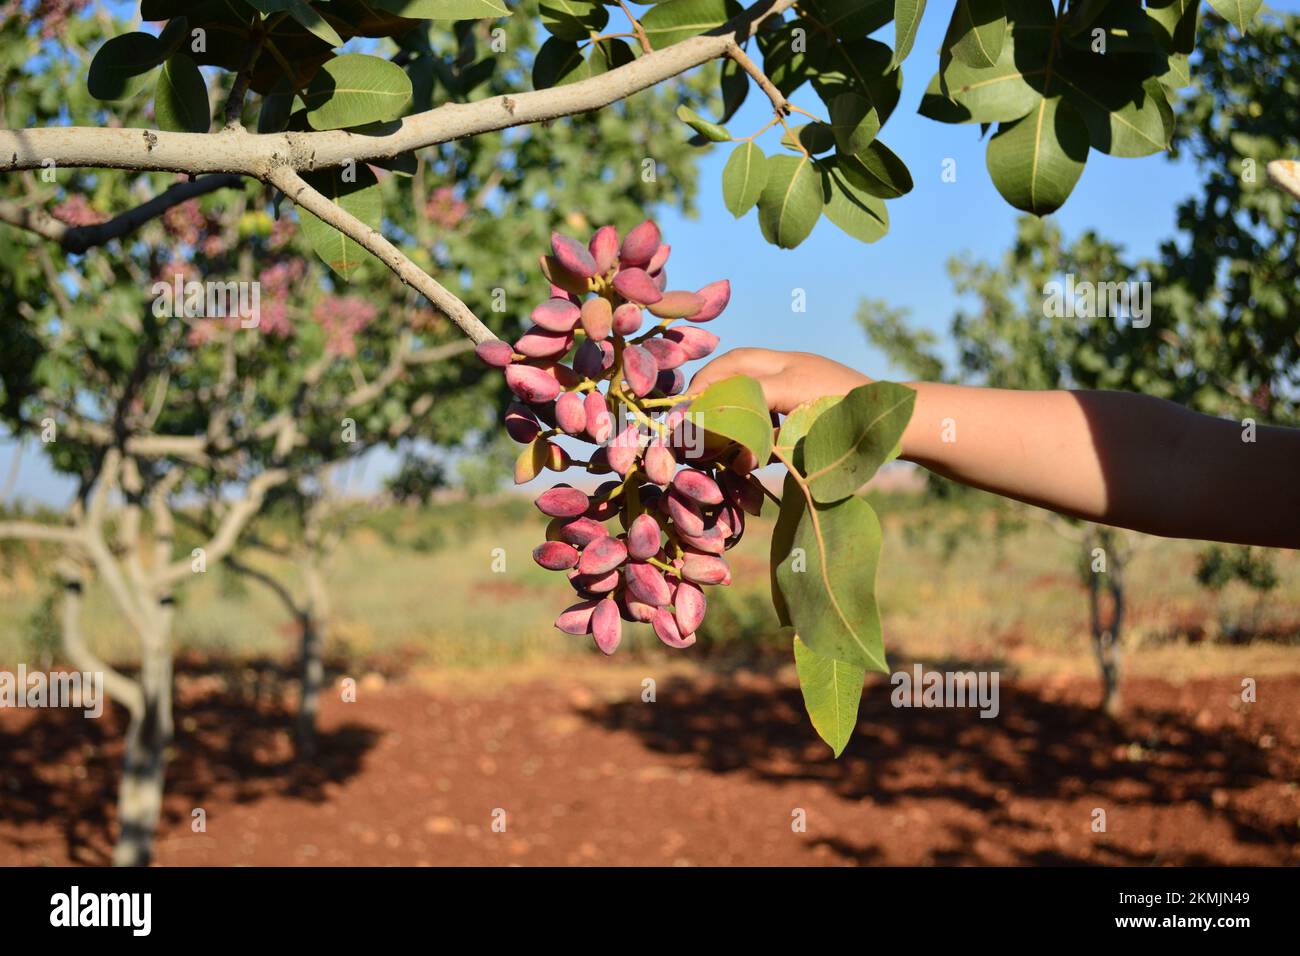 un enfant ou un enfant atteint de pistaches rouges fraîches et mûres sur la branche de l'arbre Banque D'Images